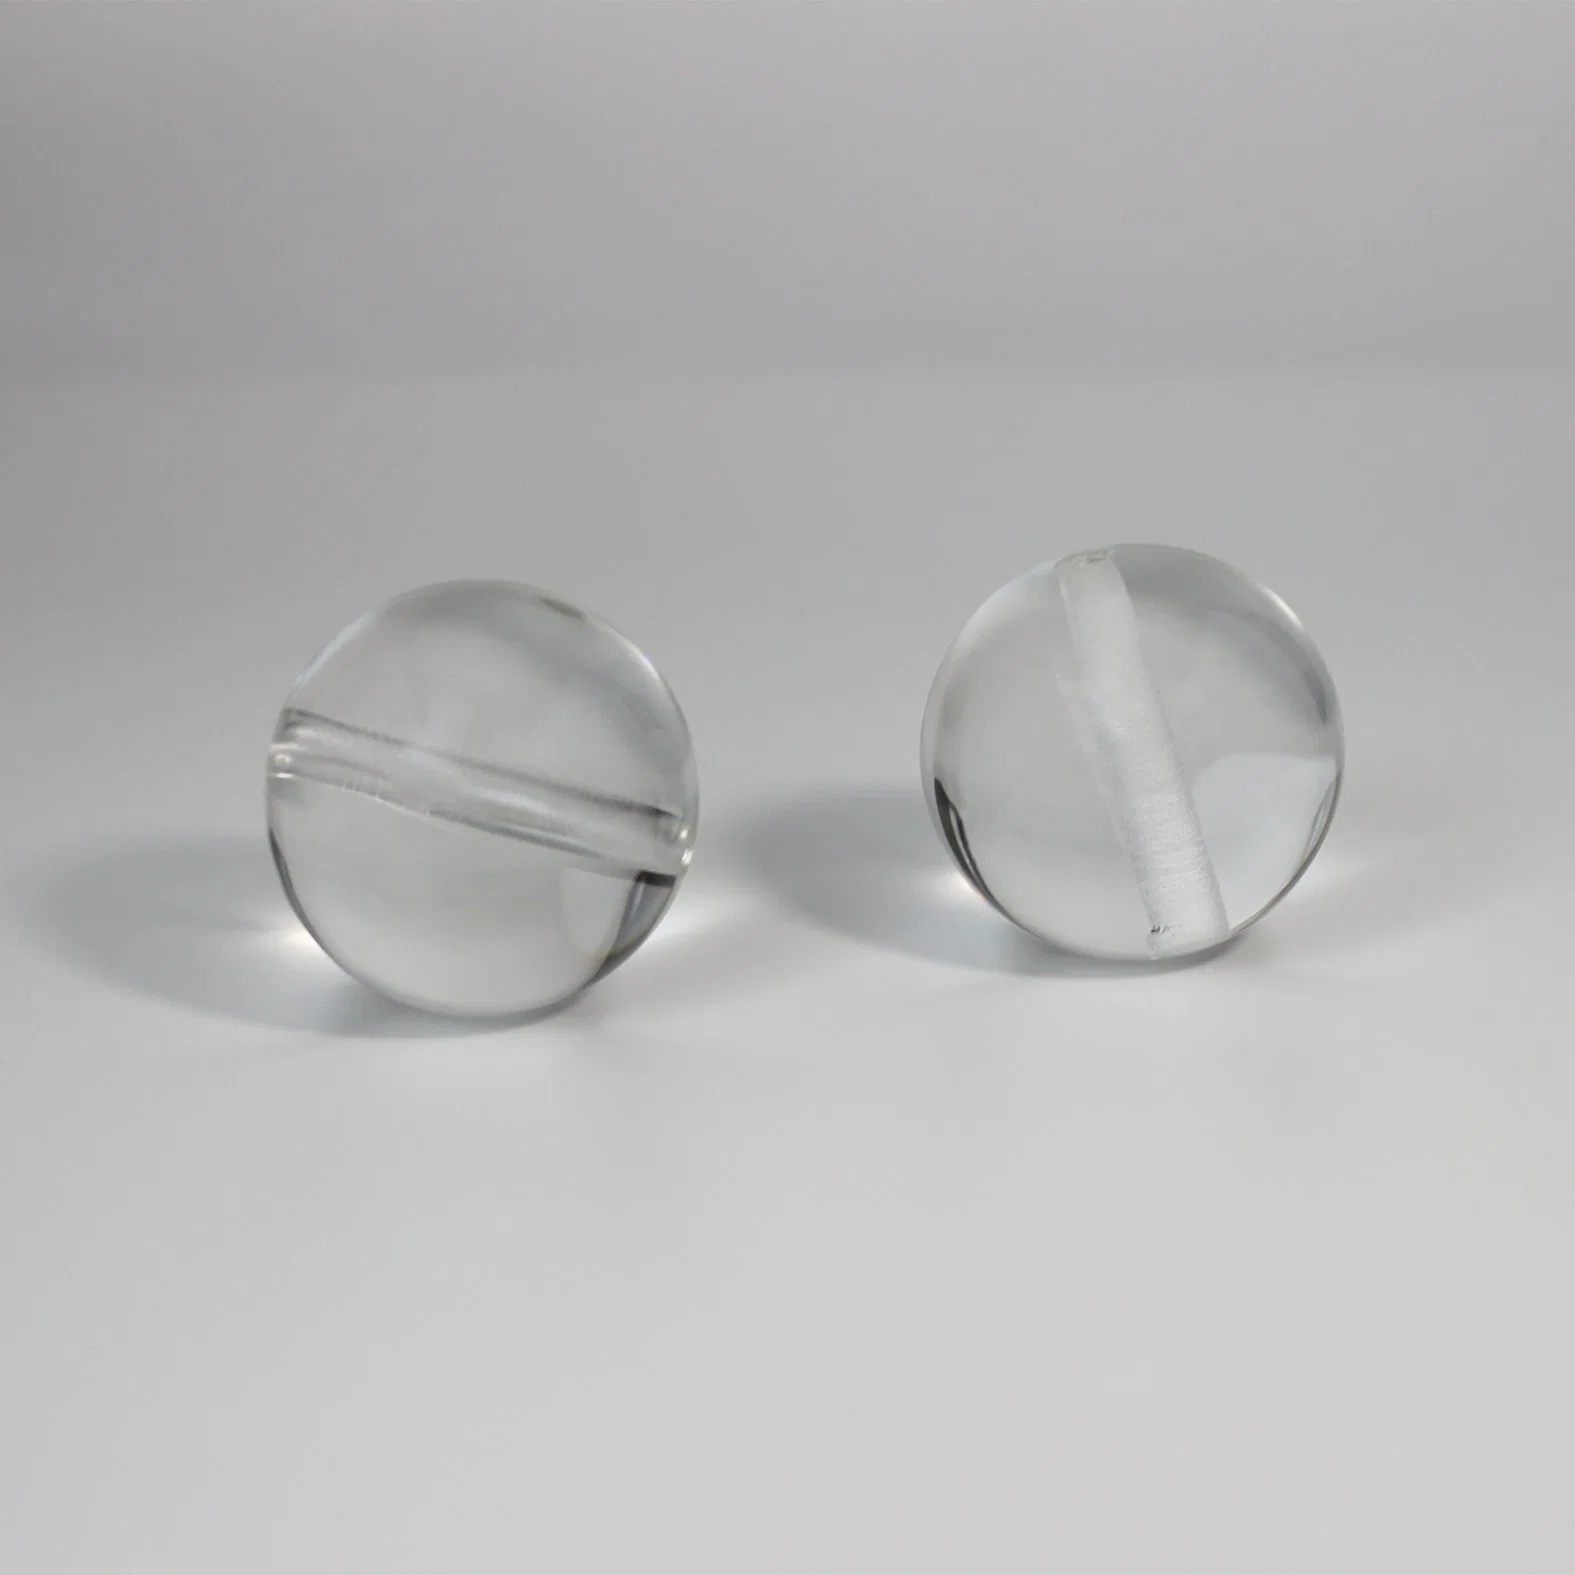 Durchmesser 20mm, 28mm, 30mm, 32mm, 34mm, 36mm Optisches Glas mit Halbkugel aus transparentem Glas